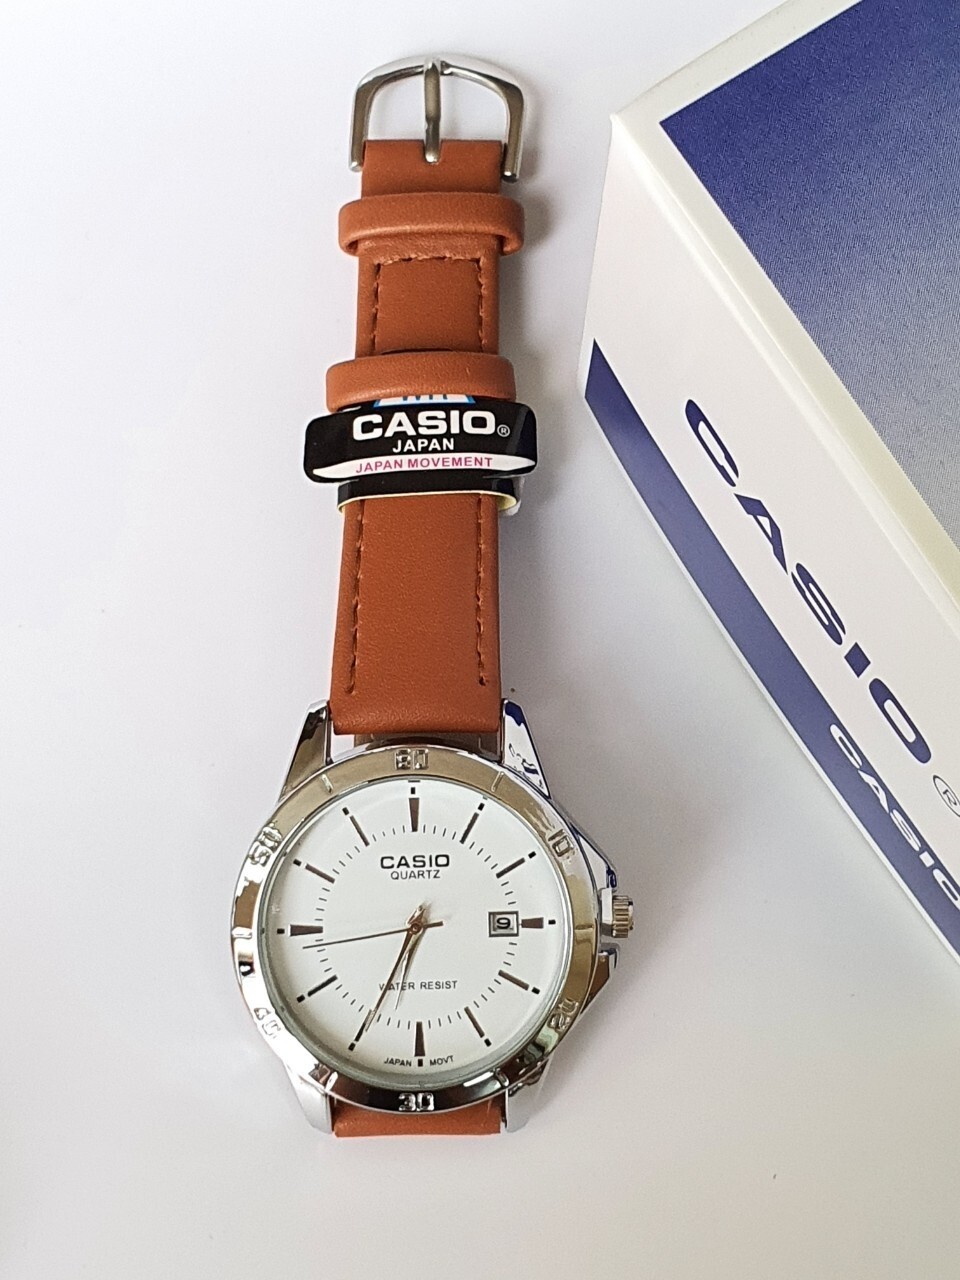 (พร้อมกล่อง) นาฬิกาแฟชั่น CAS10 นาฬิกาข้อมือ ผู้หญิง นาฬิกาผู้ชาย นาฬิกาผู้หญฺิง สายหนัง สีน้ำตาล แสดงวันที่ RC617-1